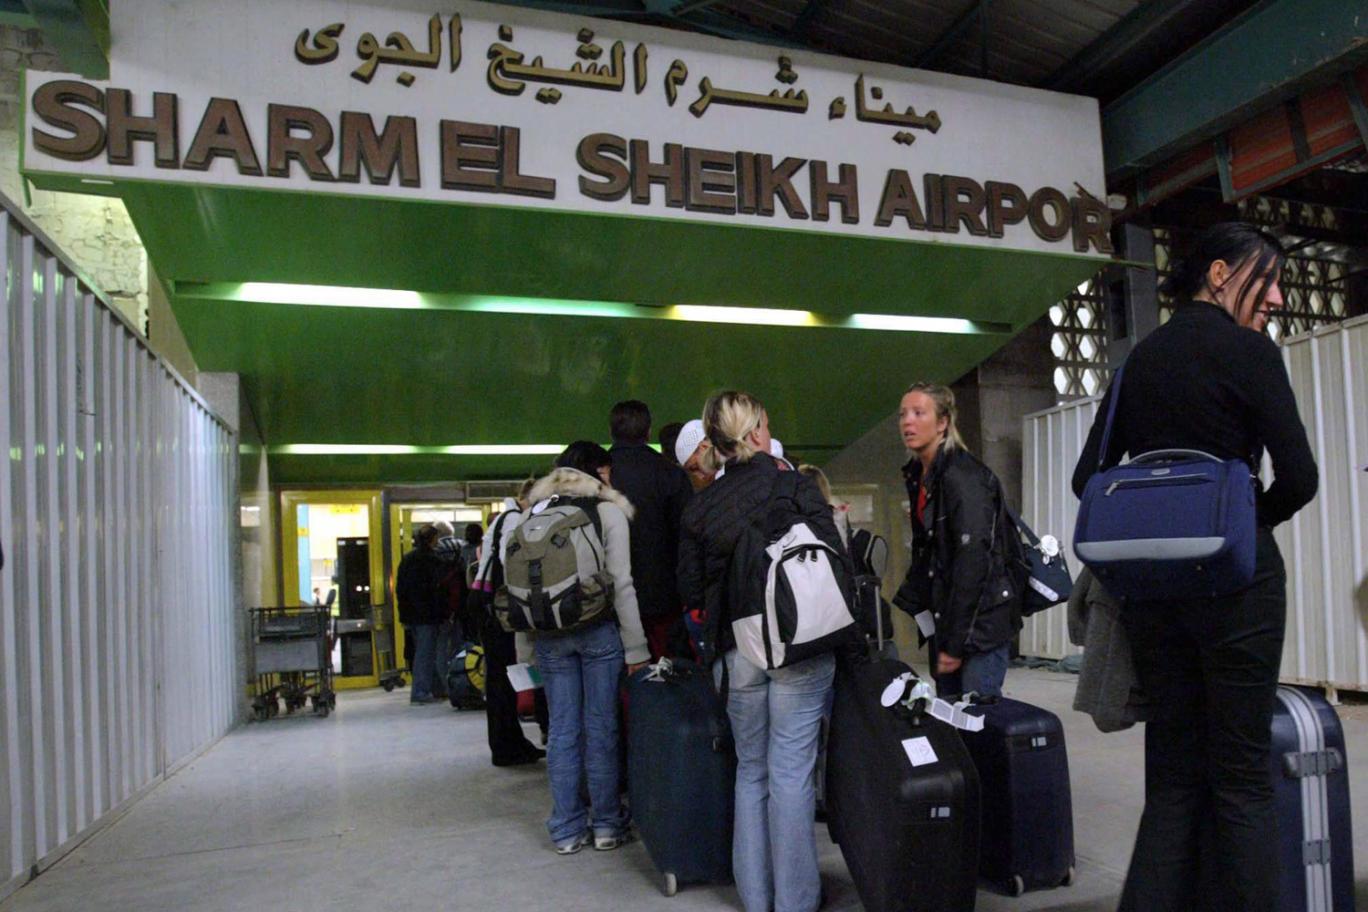 
Британия начнёт вывозить своих туристов из Египта в пятницу